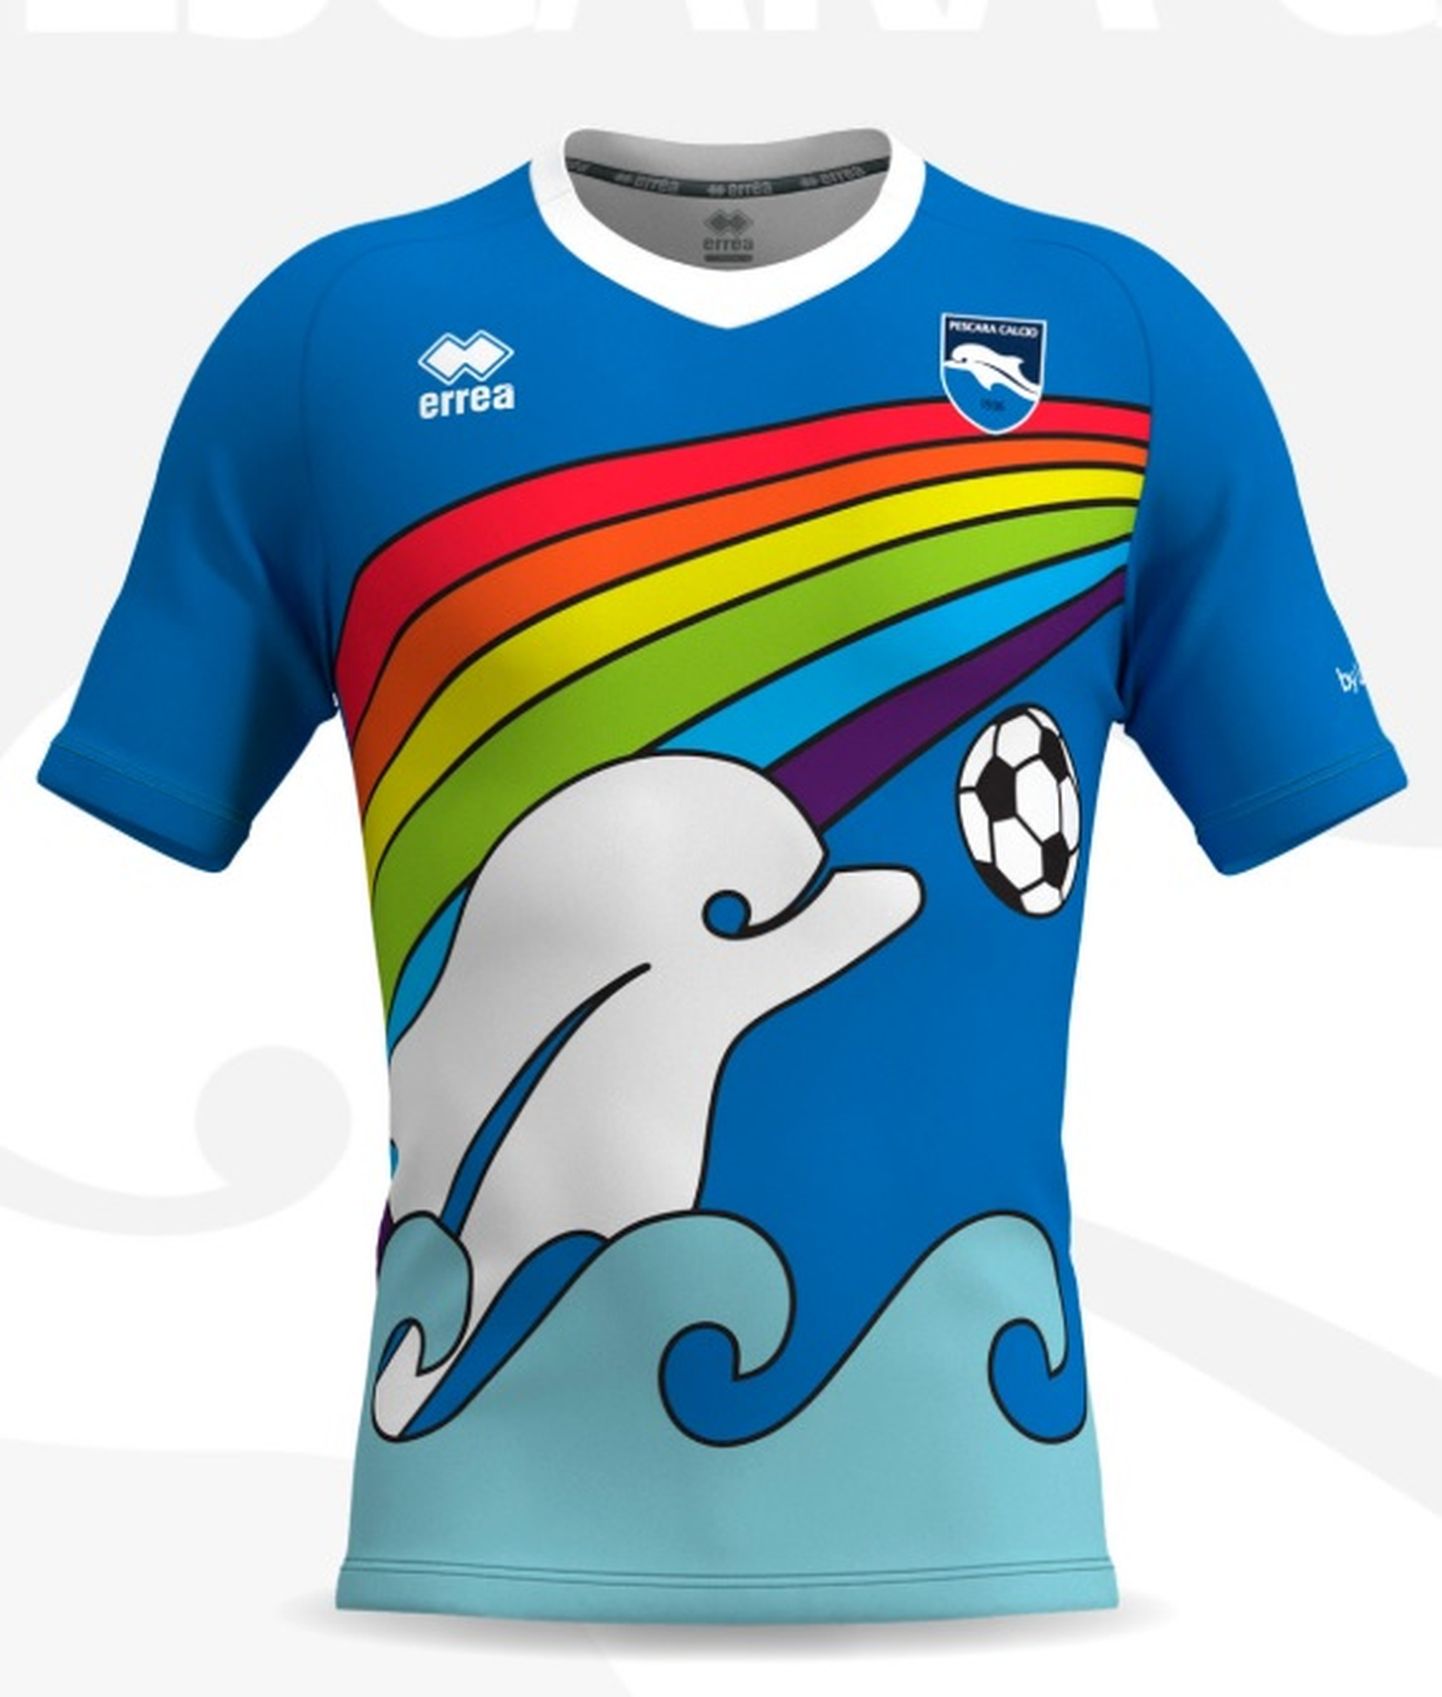 Futbola kluba "Pescara" krekls.